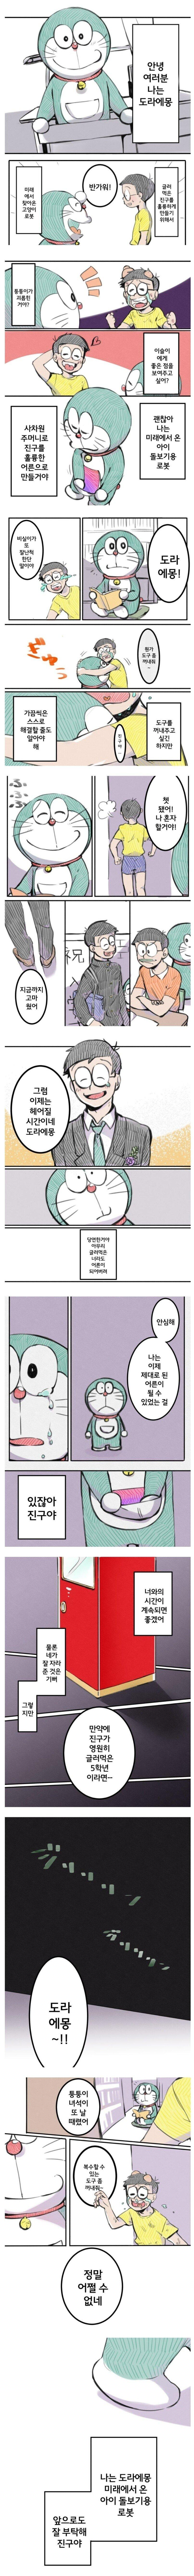 공포의 도라에몽 만화.Manhwa.png.jpg